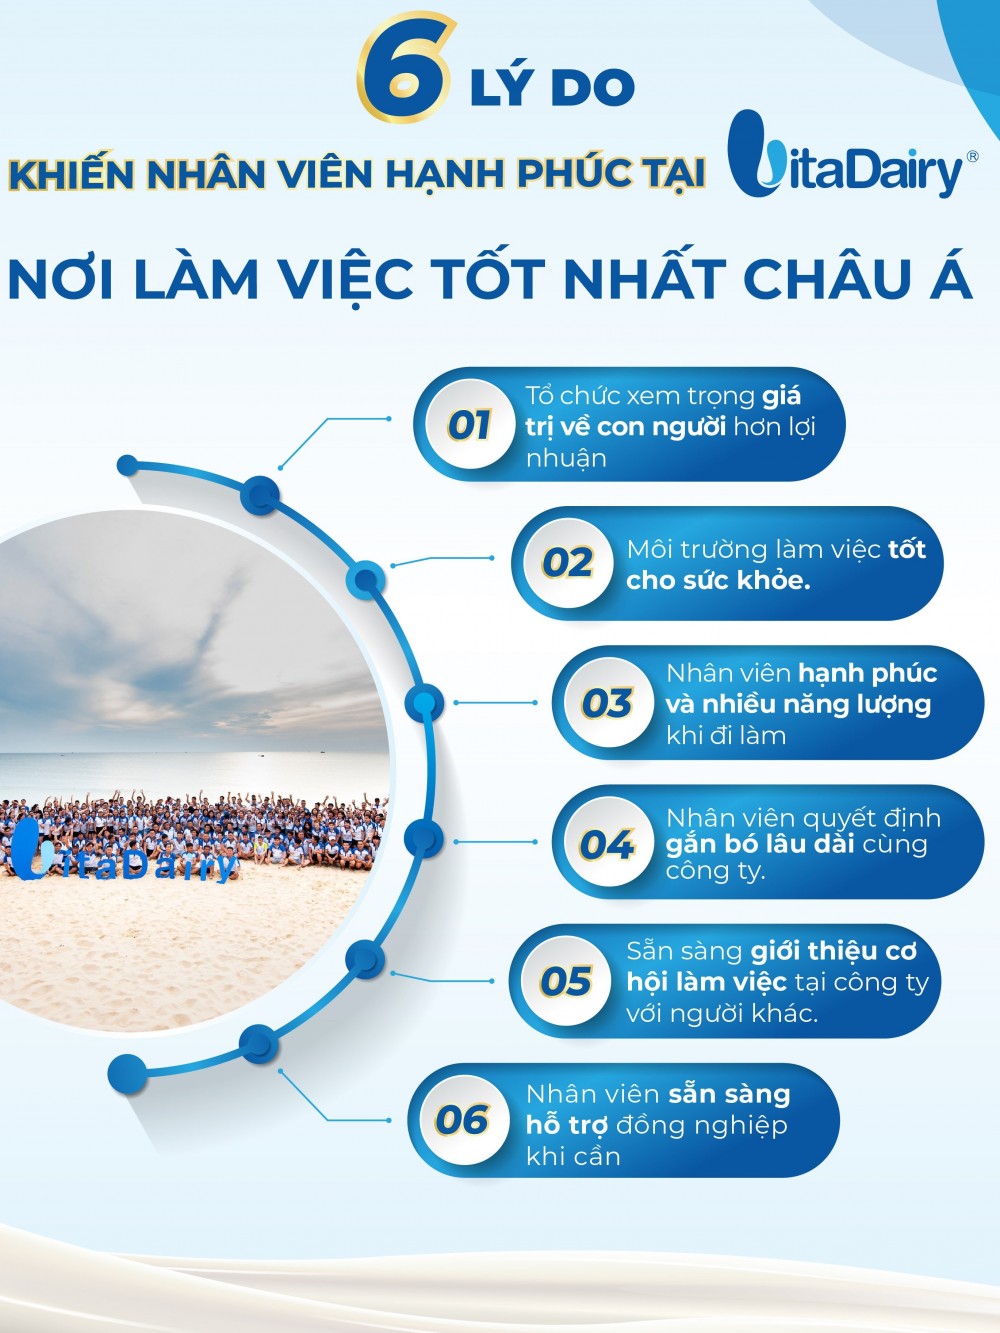 Công ty Cổ phần sữa VitaDairy Việt Nam: Nơi làm việc tốt nhất châu Á